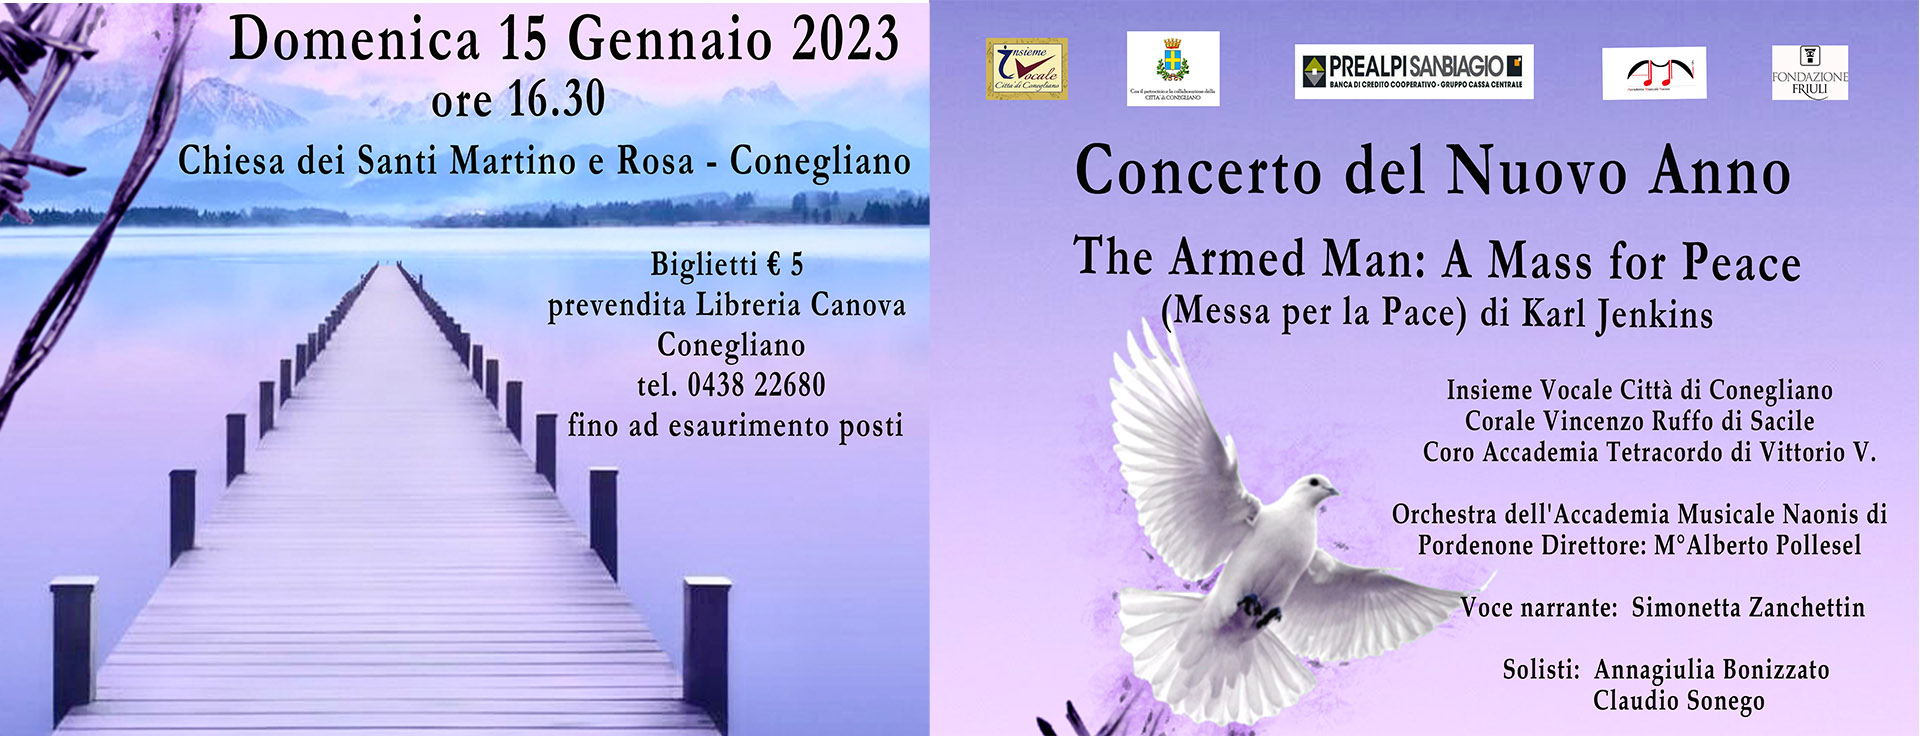 Concerto del Nuovo Anno 2023